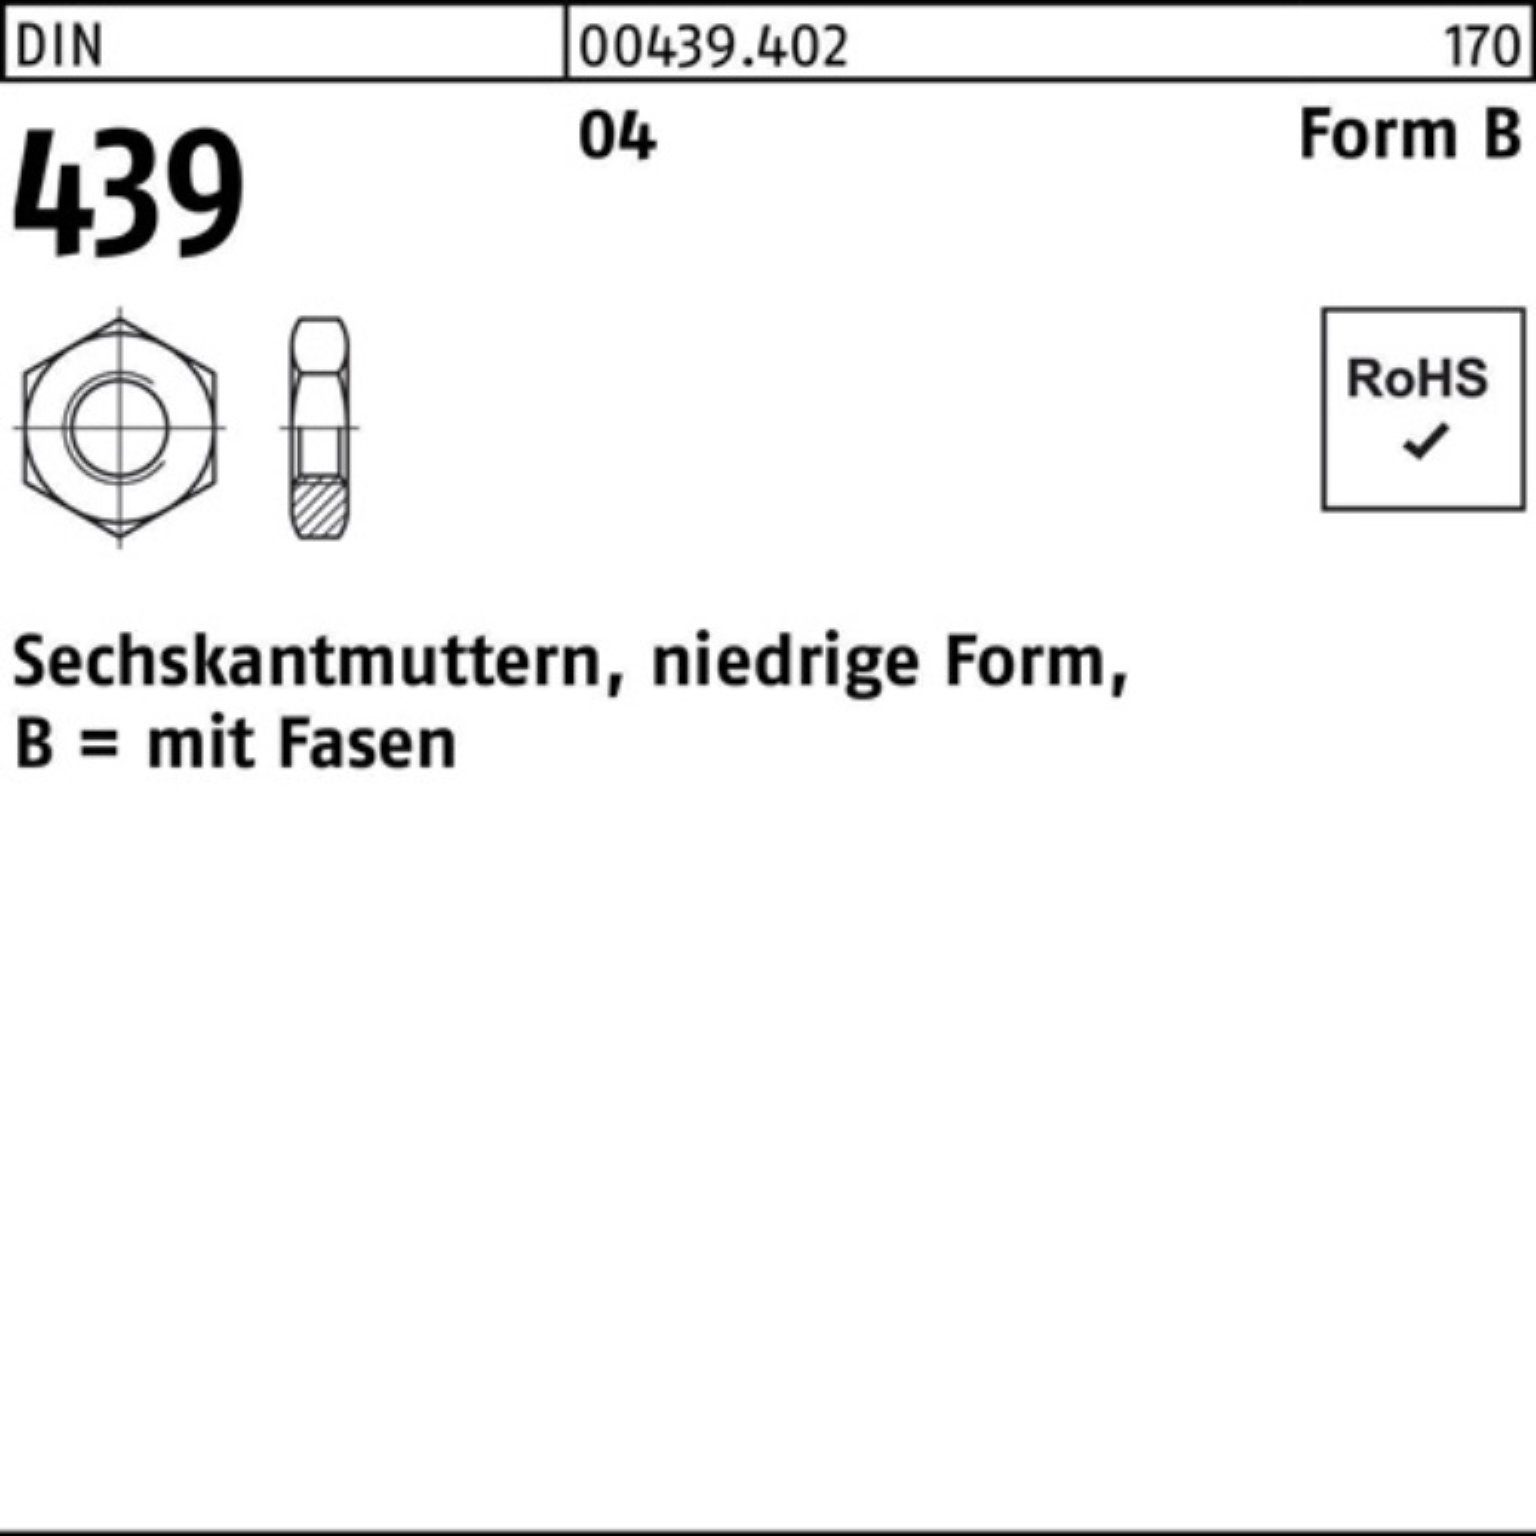 FormB Pack 18 439/ISO 100er BM 4035 Muttern Sechskantmutter DIN Reyher Automatenstahl